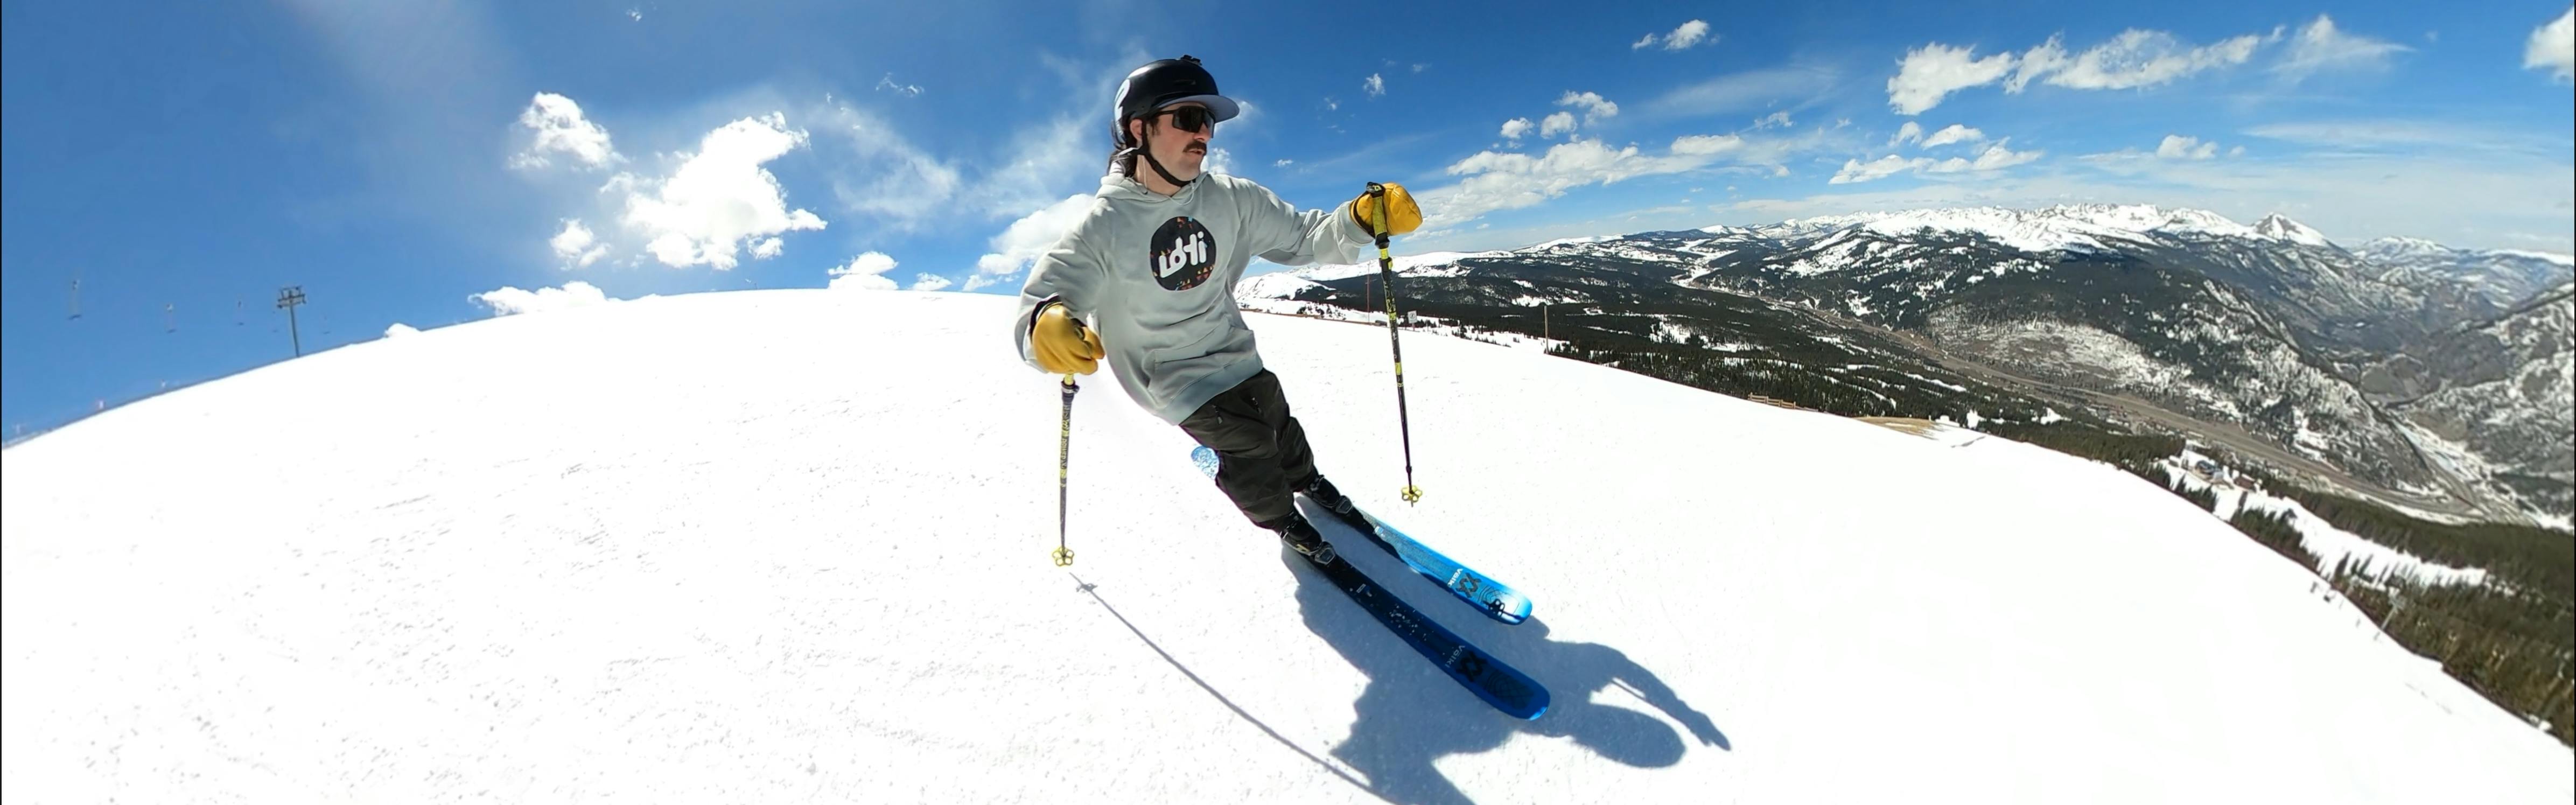 Dalbello Ski Boots – UtahSkis